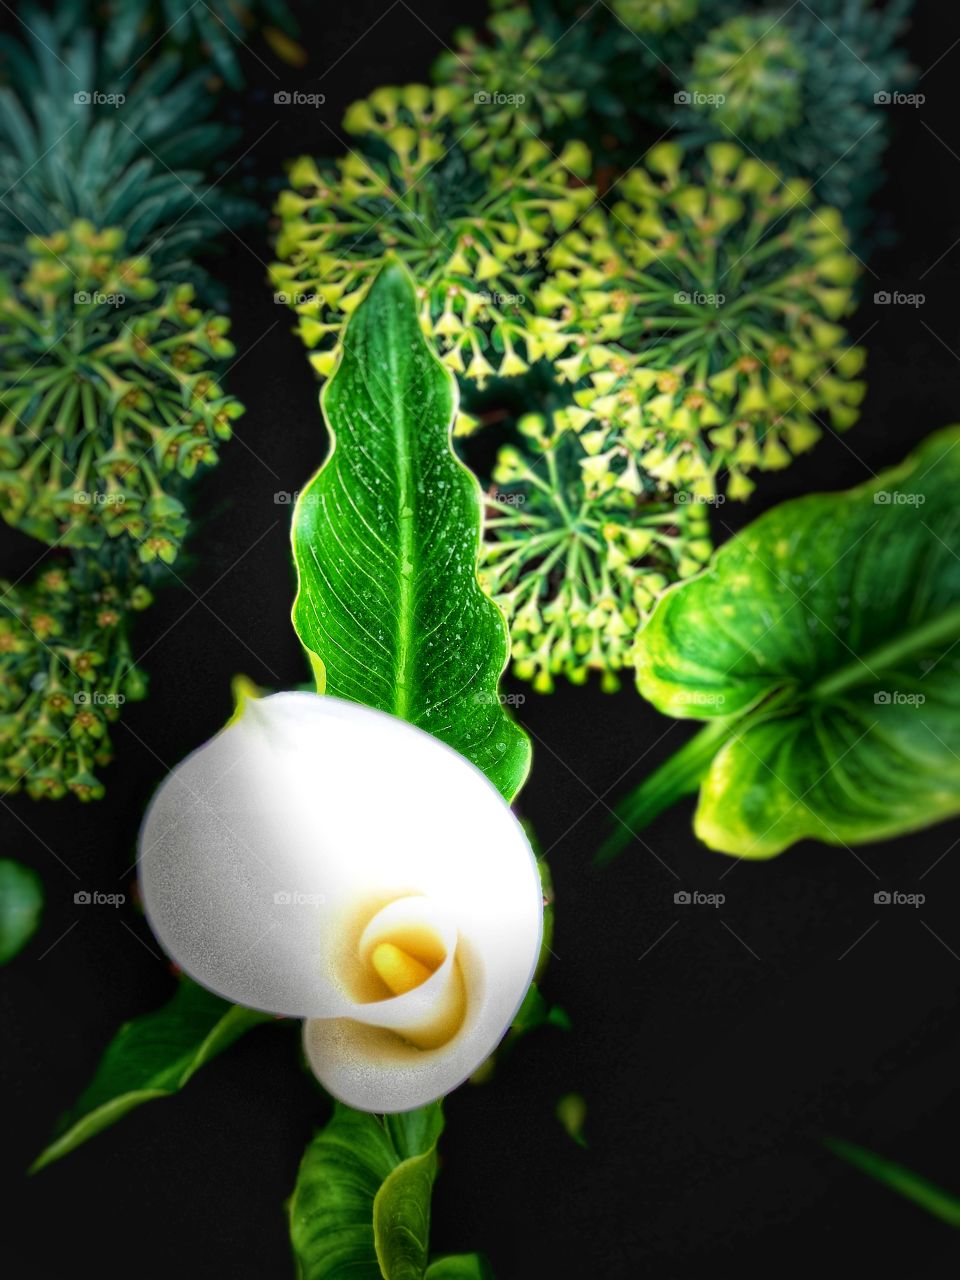 Beautiful Botanicals! Pure White Cala Lily!